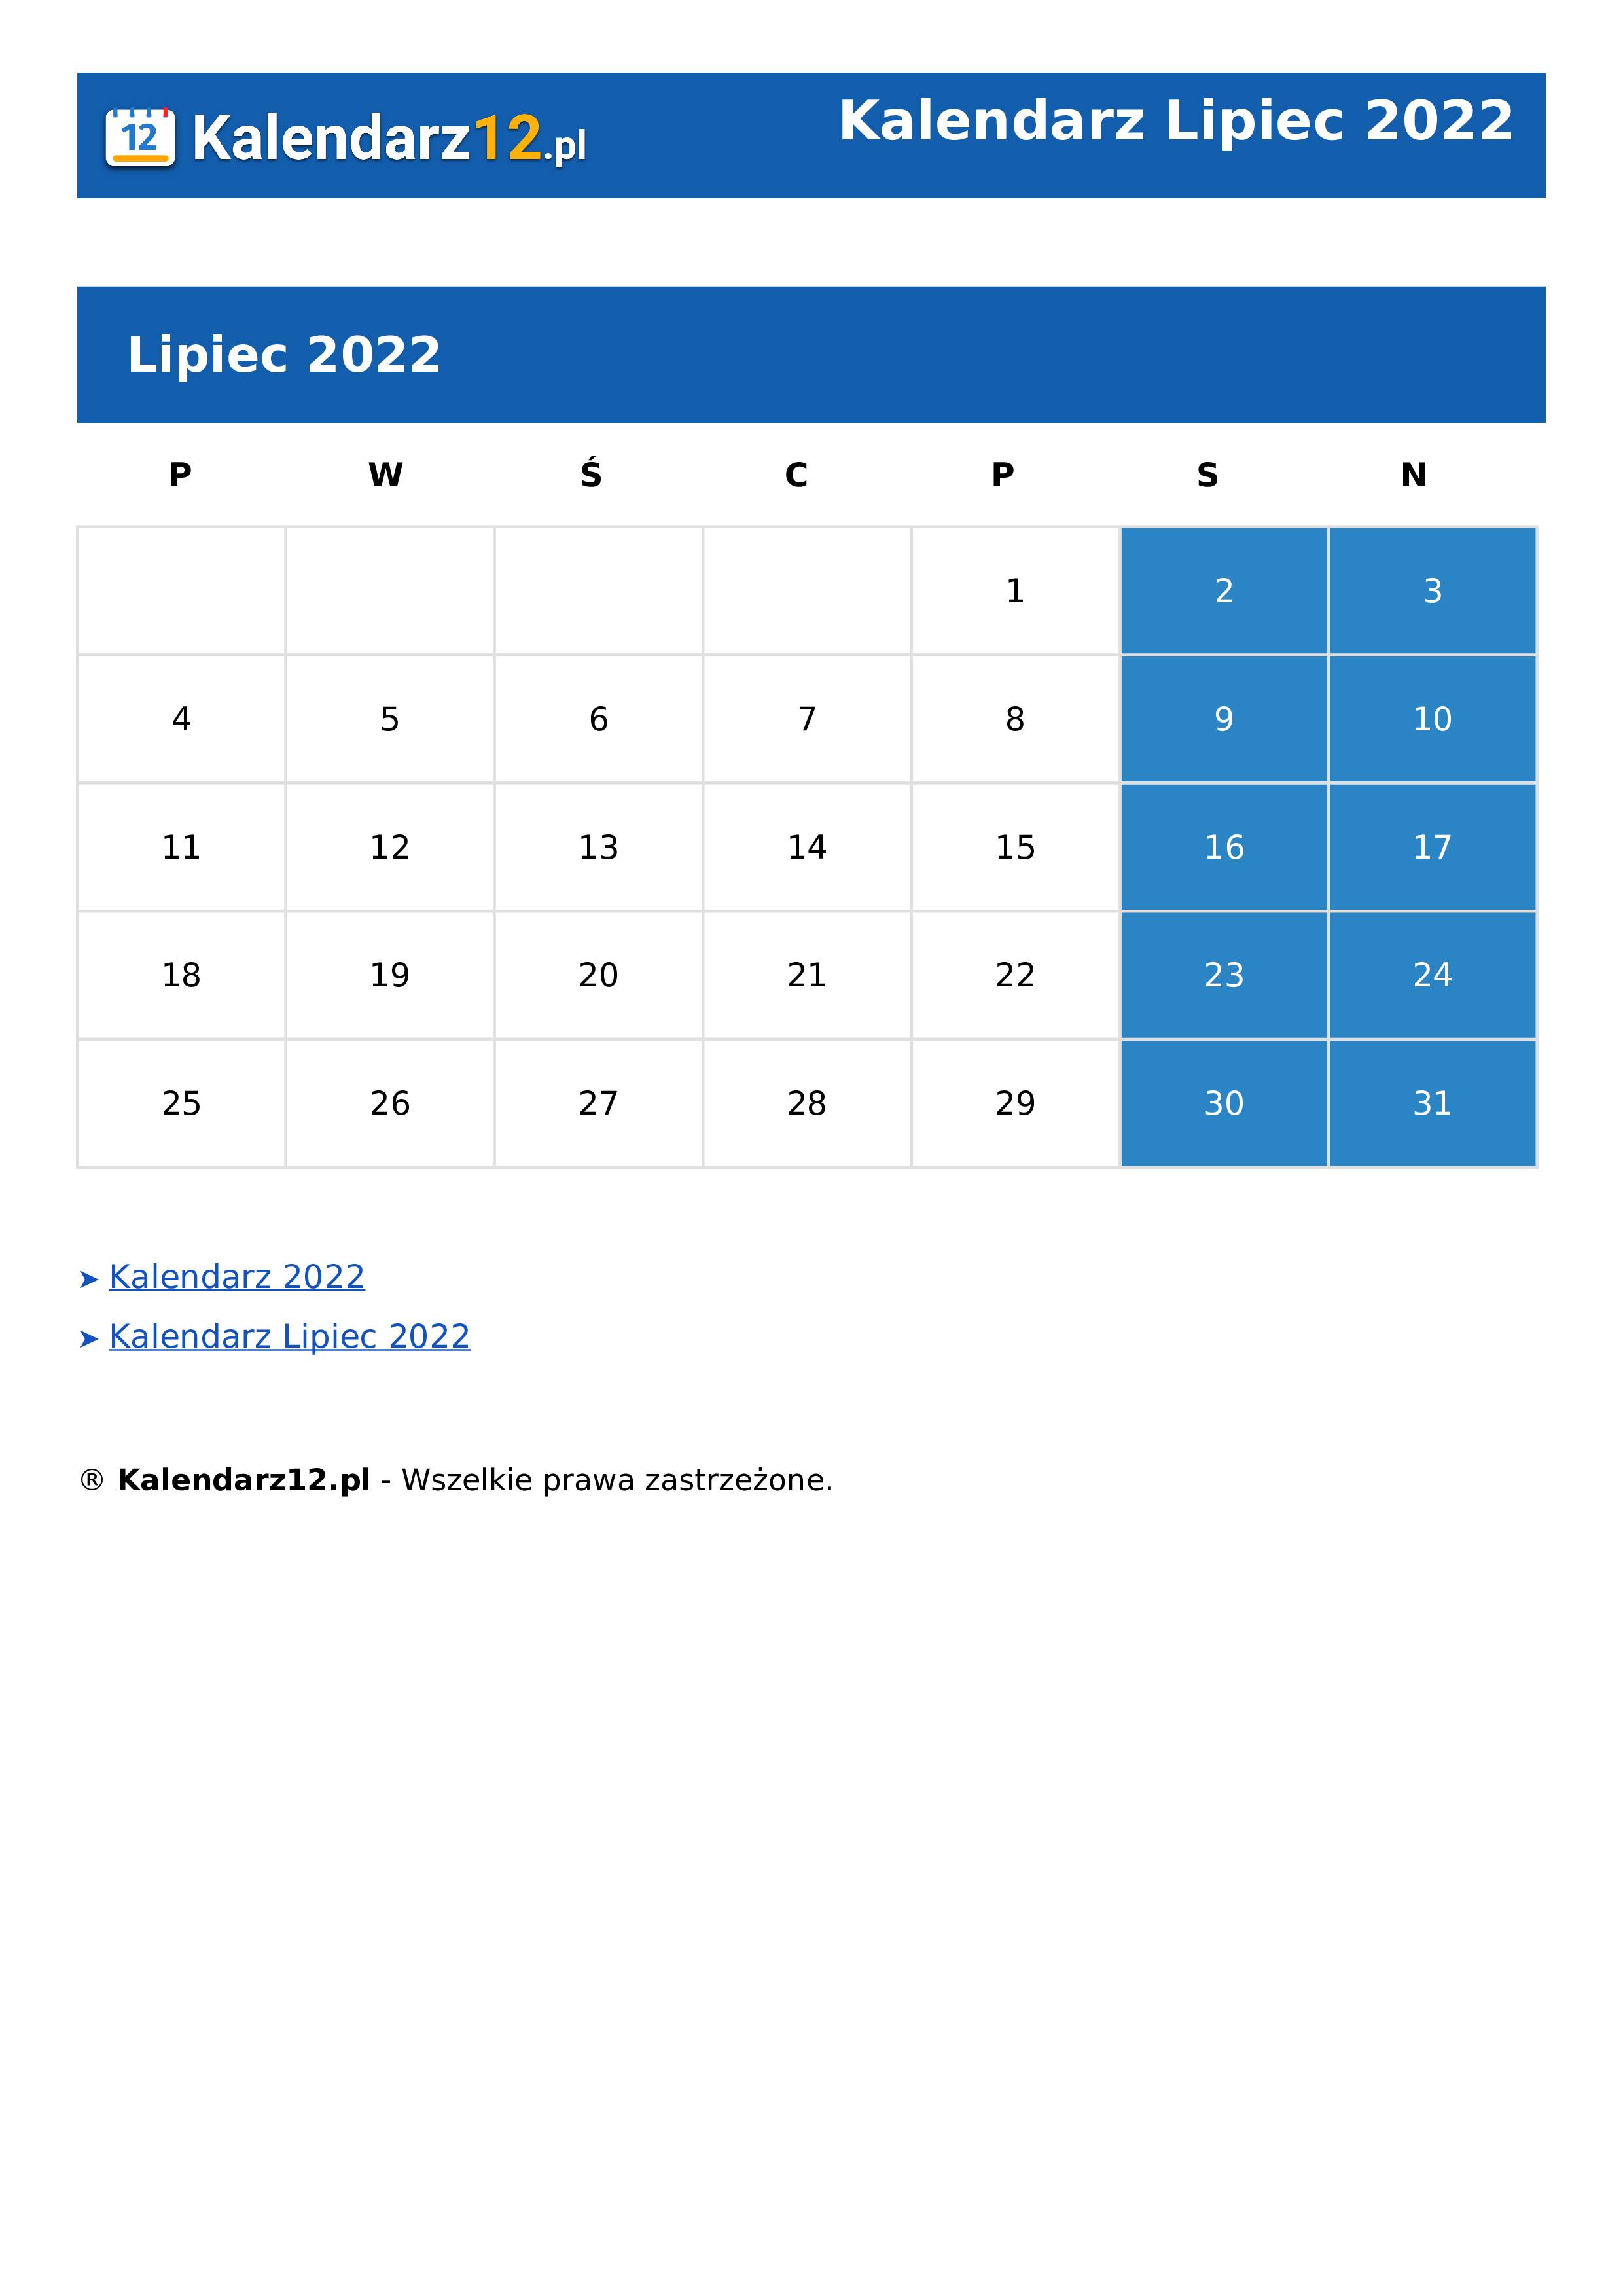 Calendar Lipiec 2022